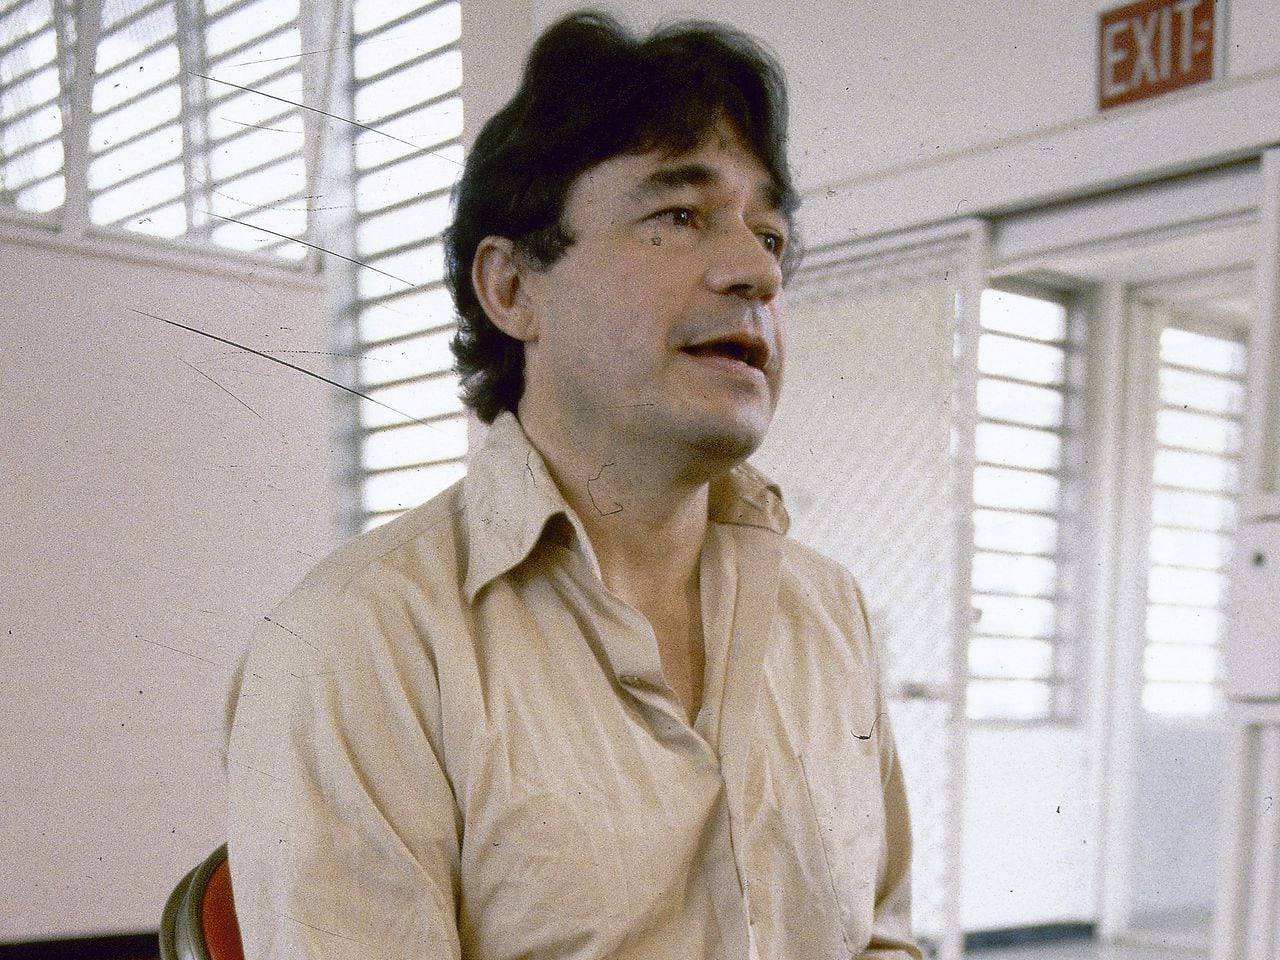 Carlos Lehder fue el único de los líderes del cartel de Medellín que fue capturado vivo cuando este estaba operando.